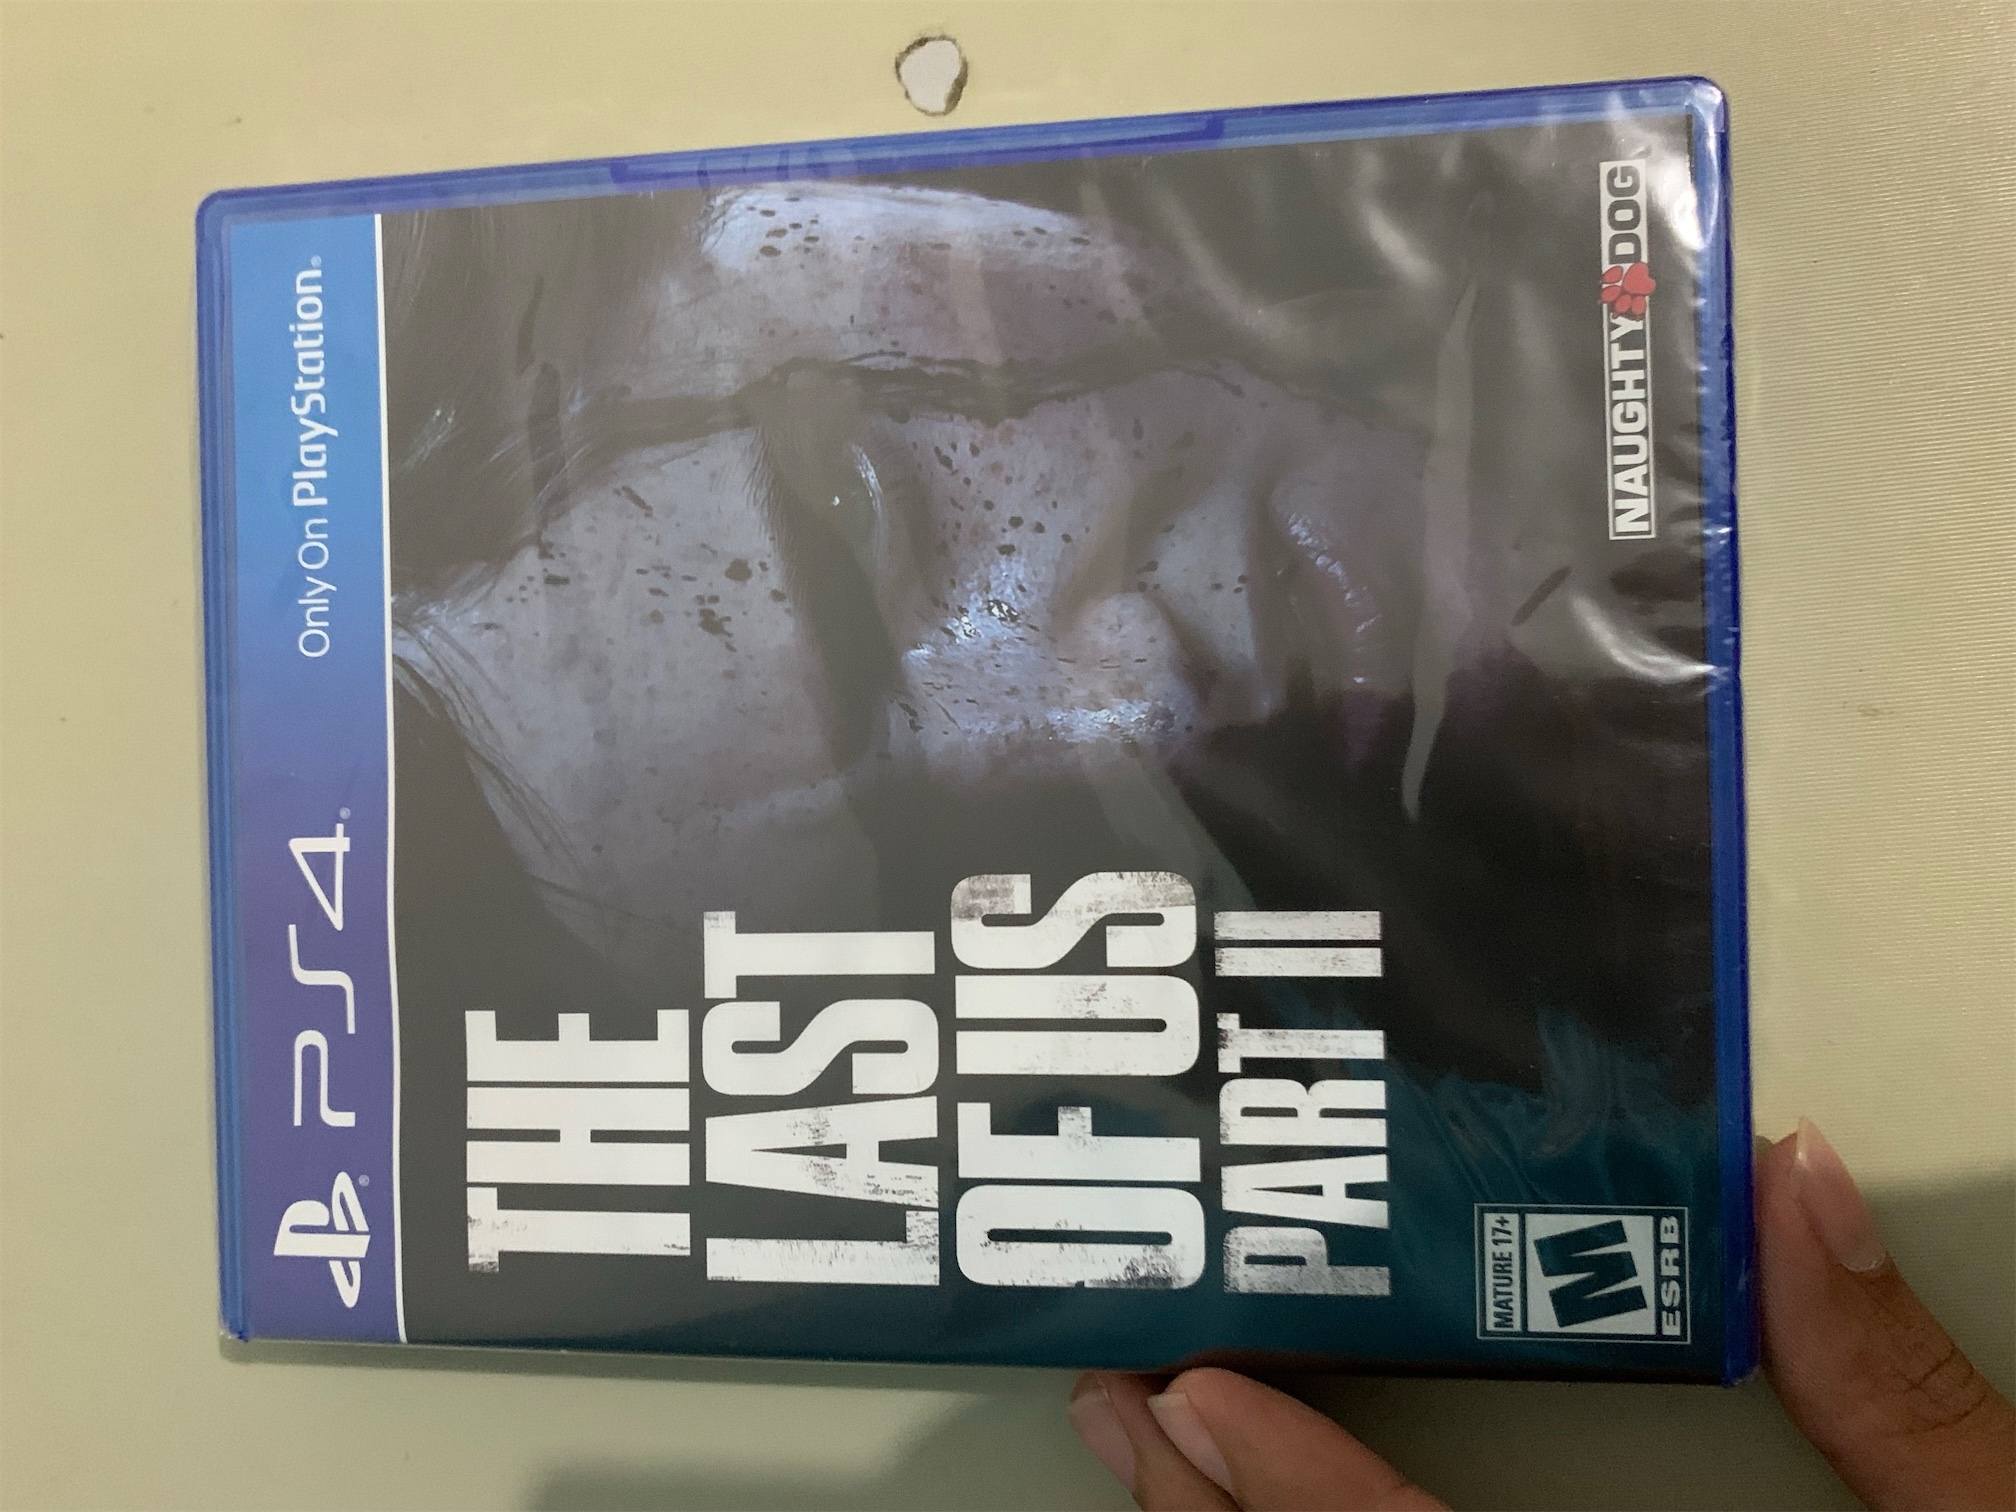 consolas y videojuegos - The last of us 2 para ps4 “sellado nuevo